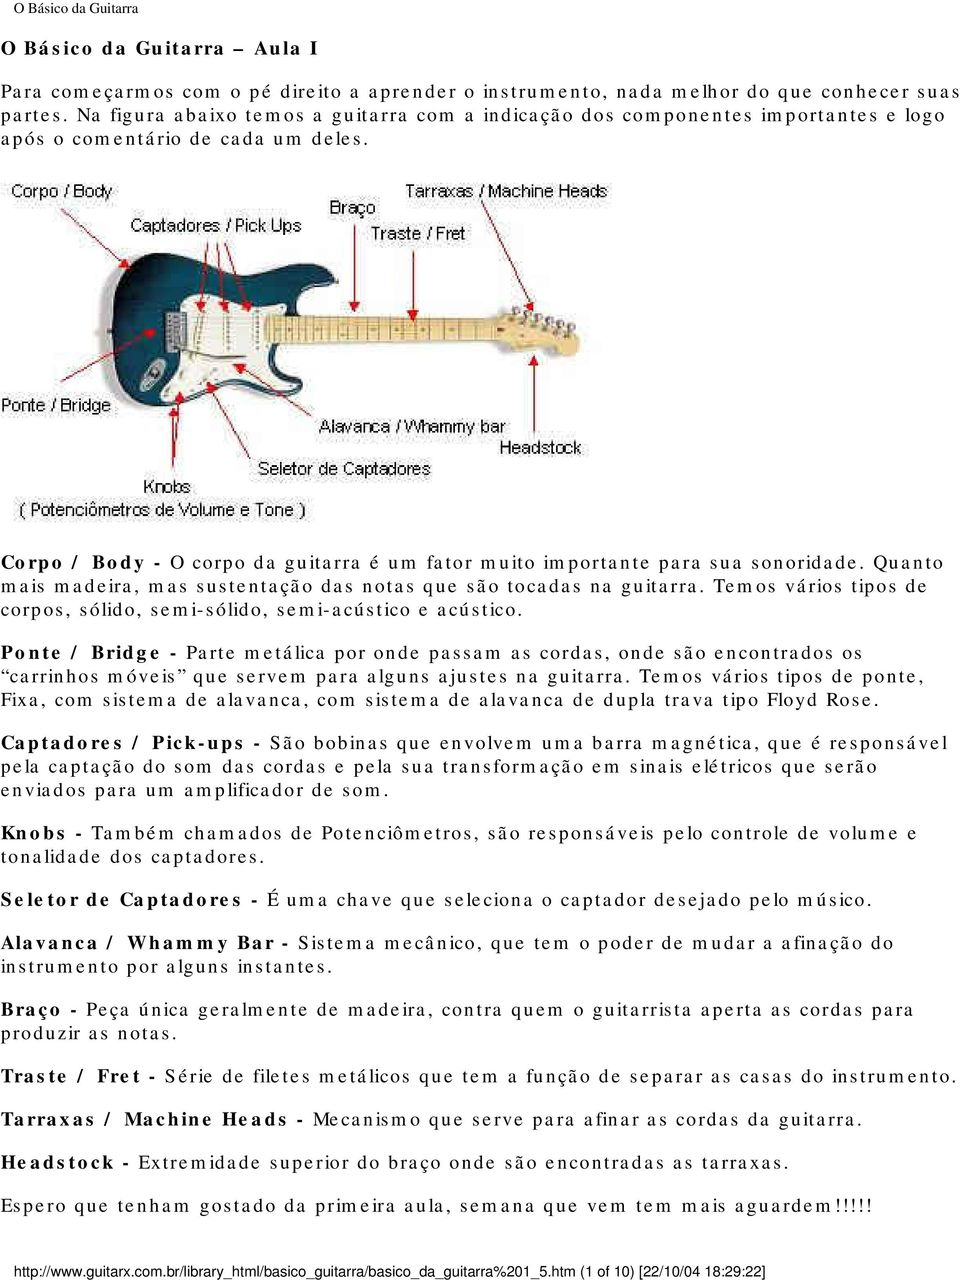 Corpo / Body - O corpo da guitarra é um fator muito importante para sua sonoridade. Quanto mais madeira, mas sustentação das notas que são tocadas na guitarra.